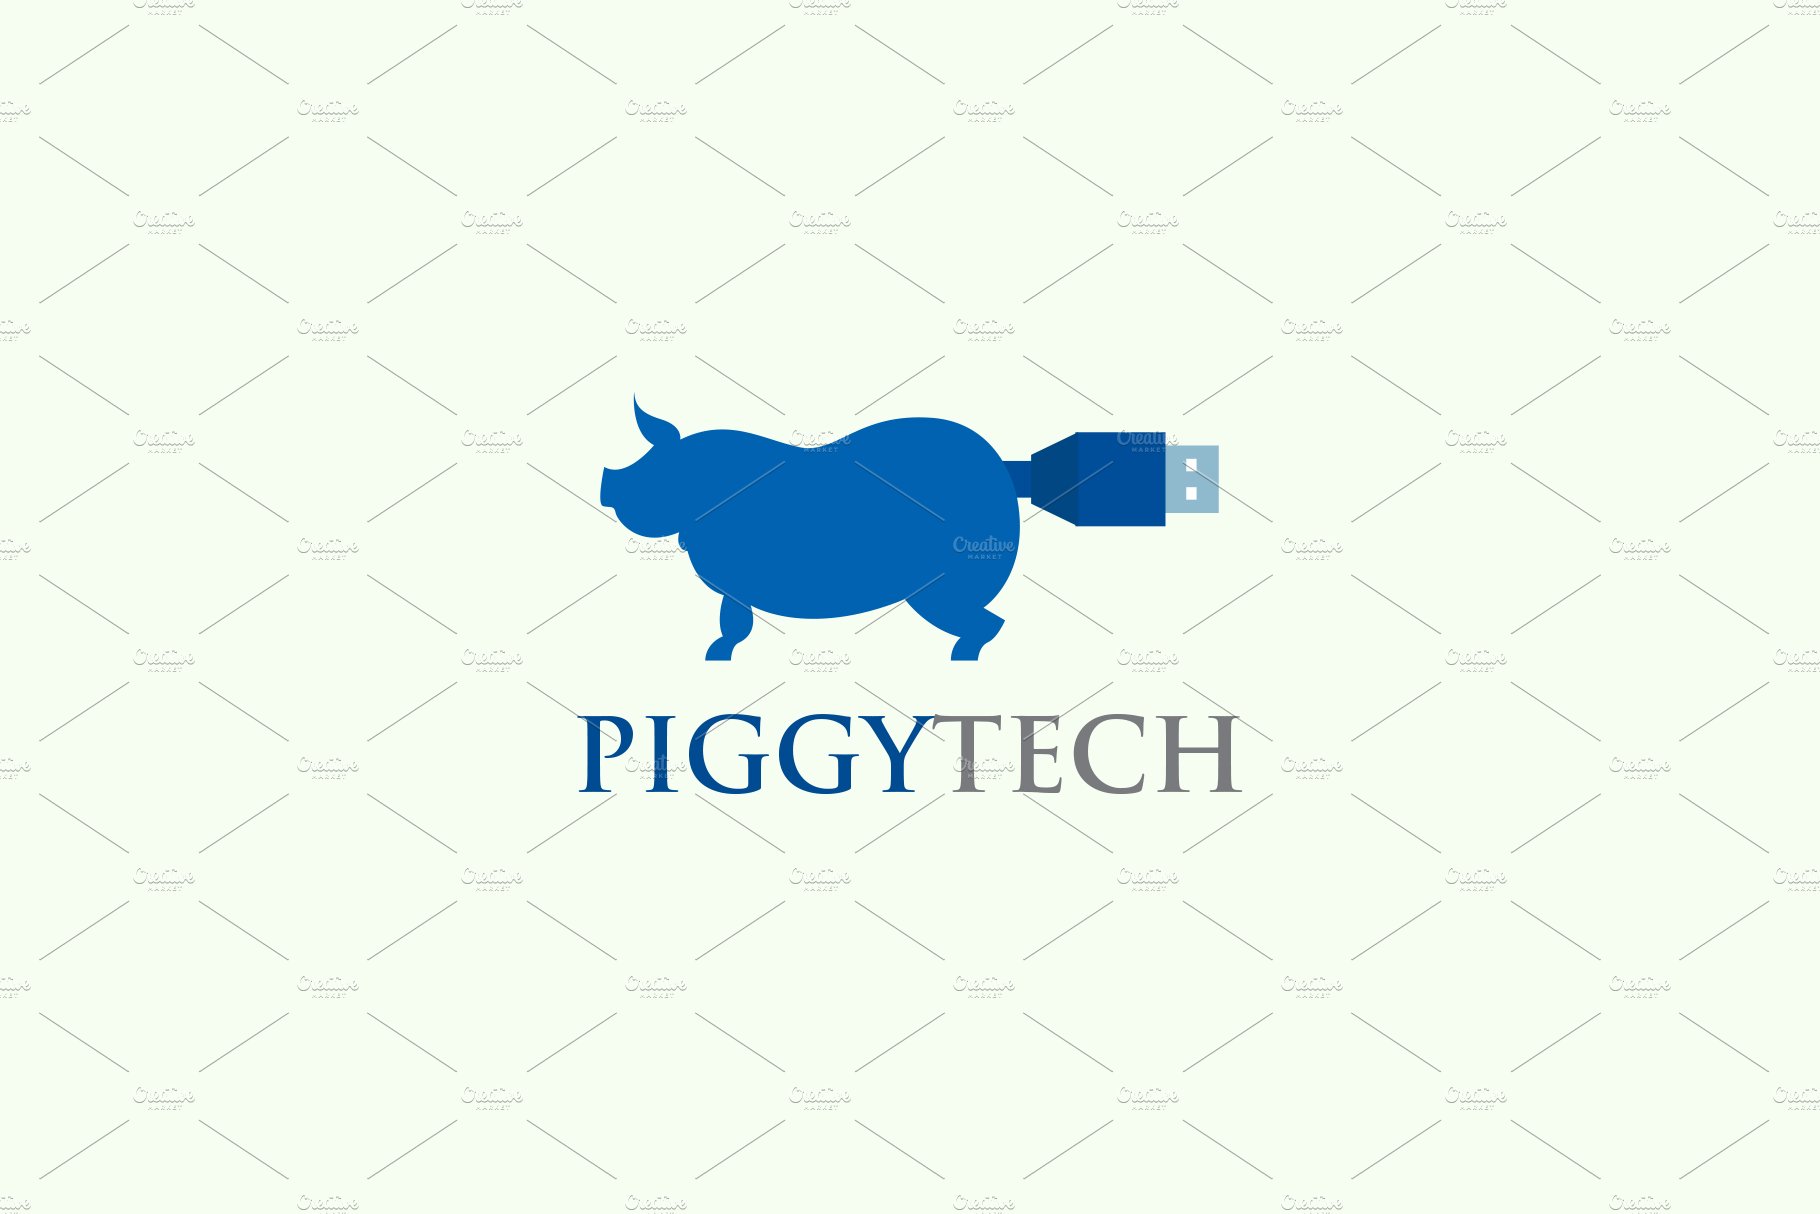 Piggy Tech Logo cover image.